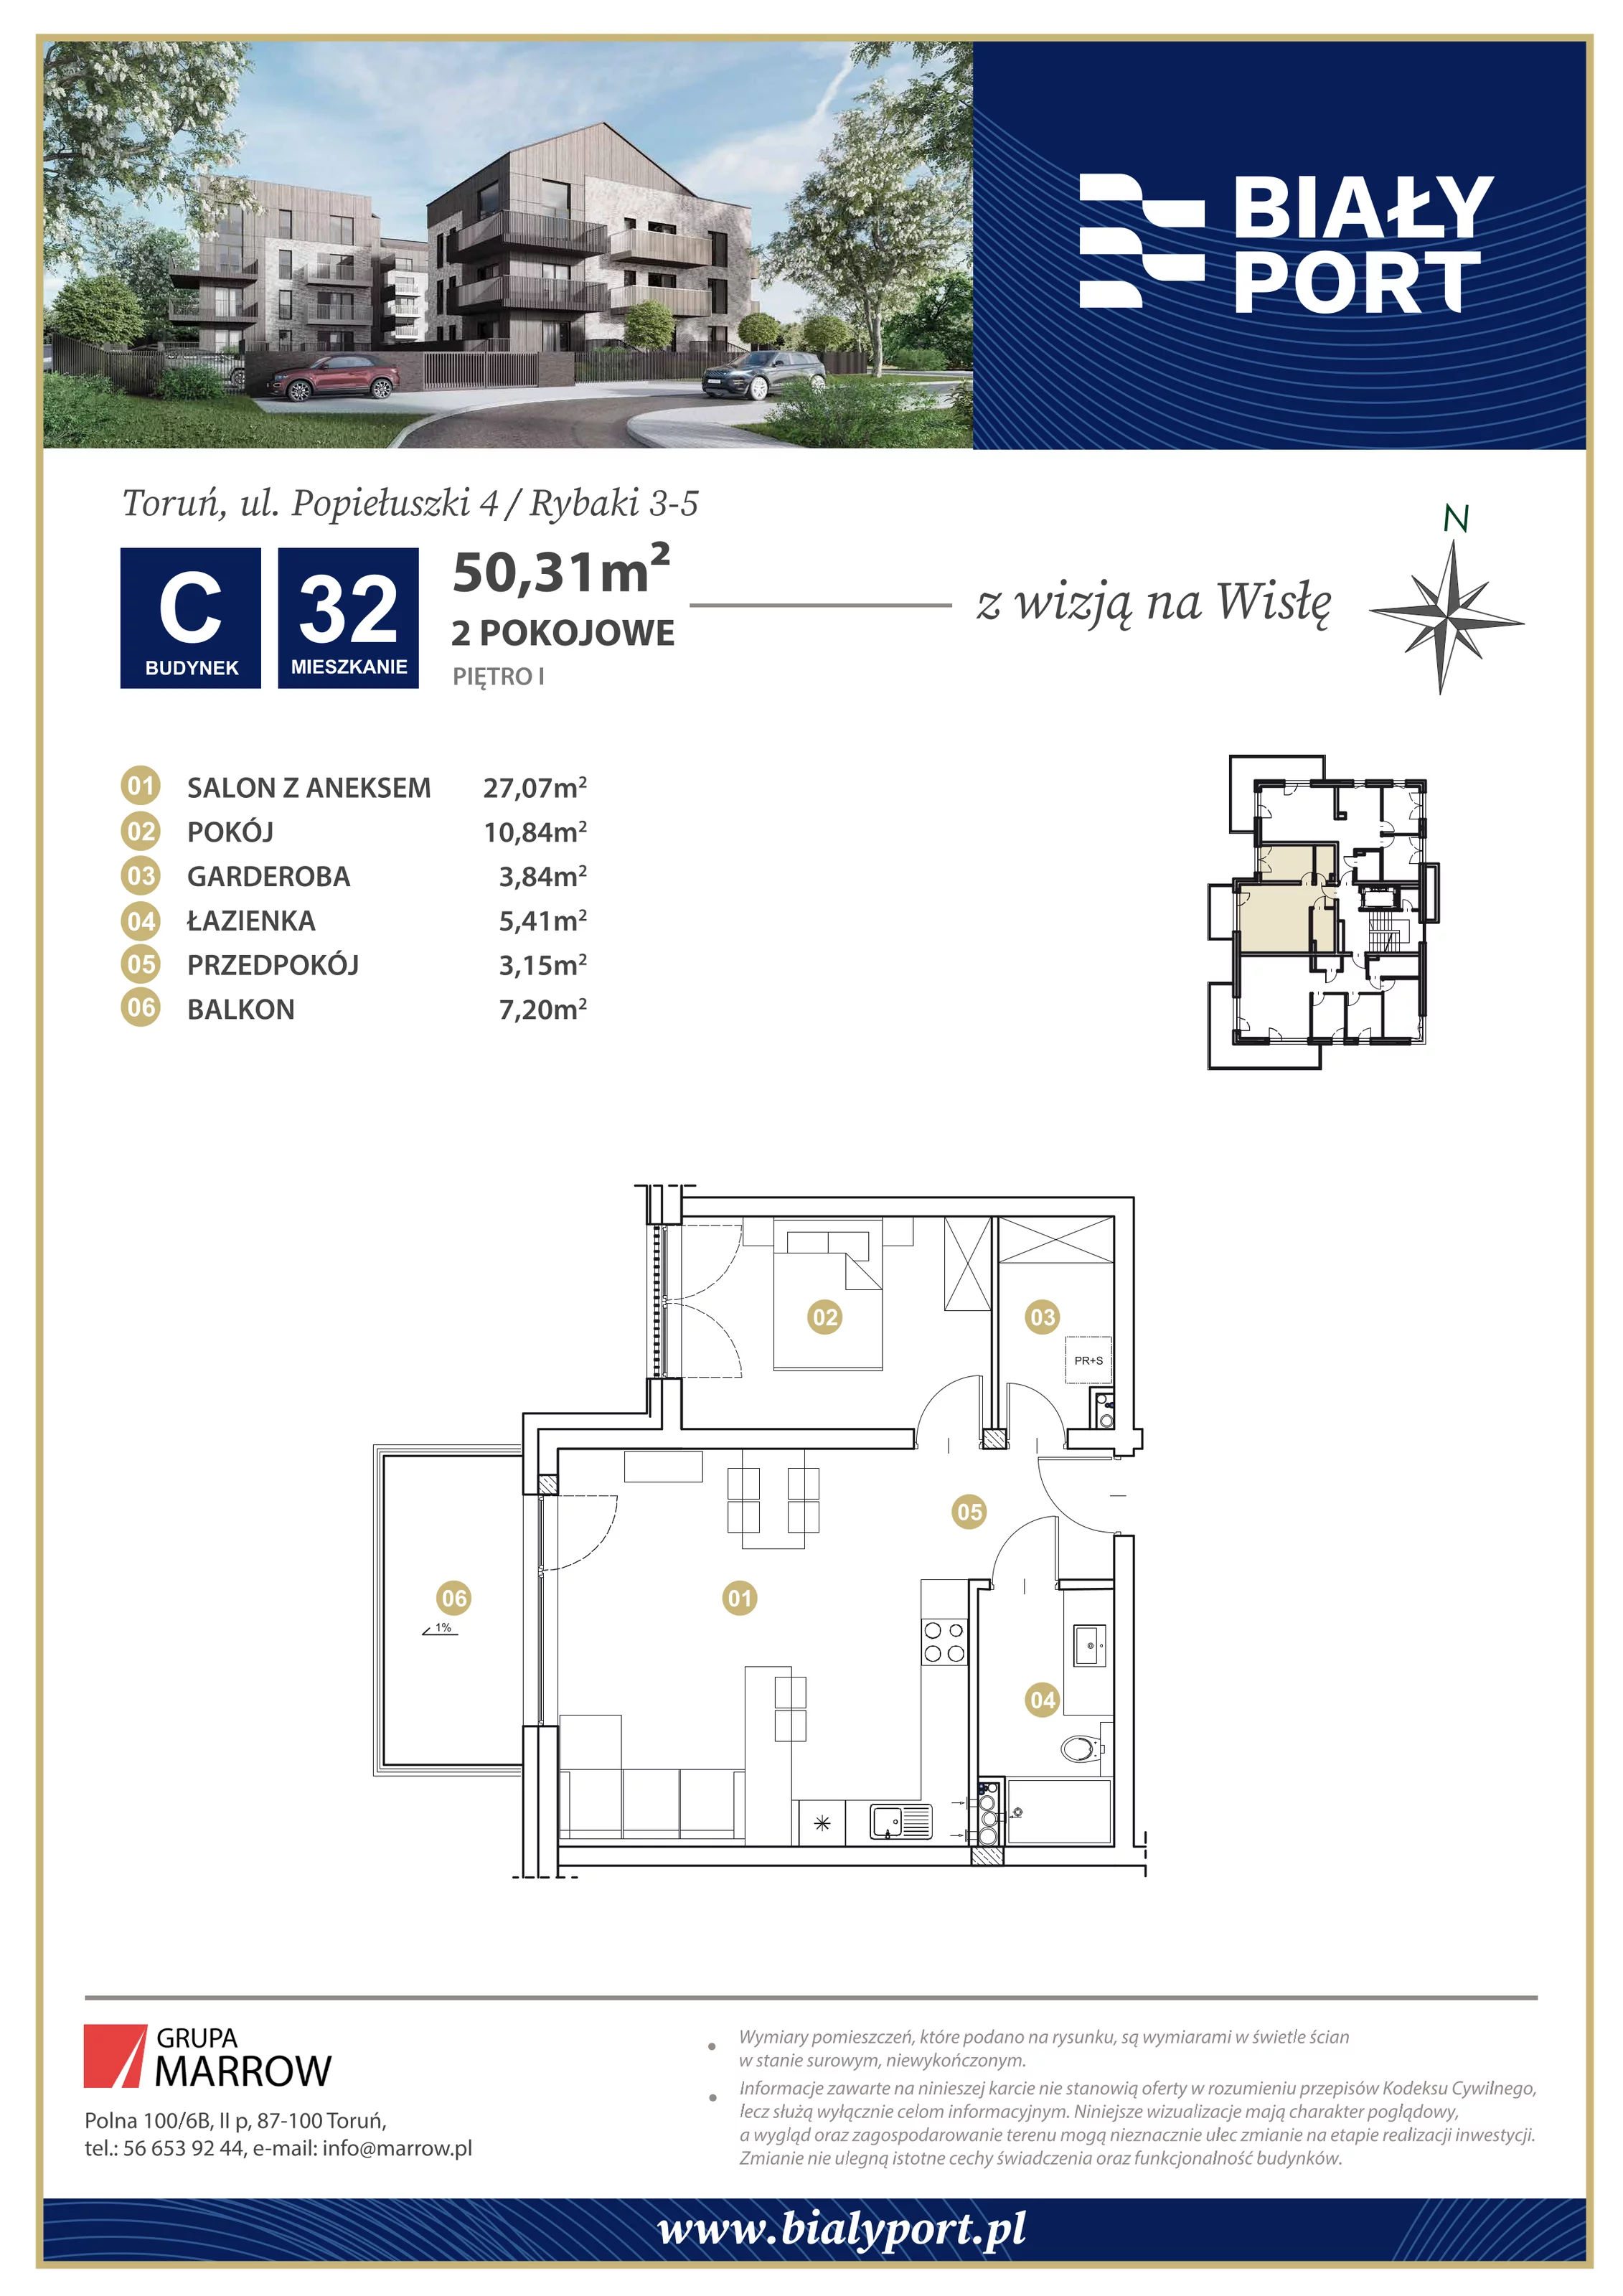 Mieszkanie 50,31 m², piętro 1, oferta nr 32, Biały Port, Toruń, Rybaki, ul. Popiełuszki 4